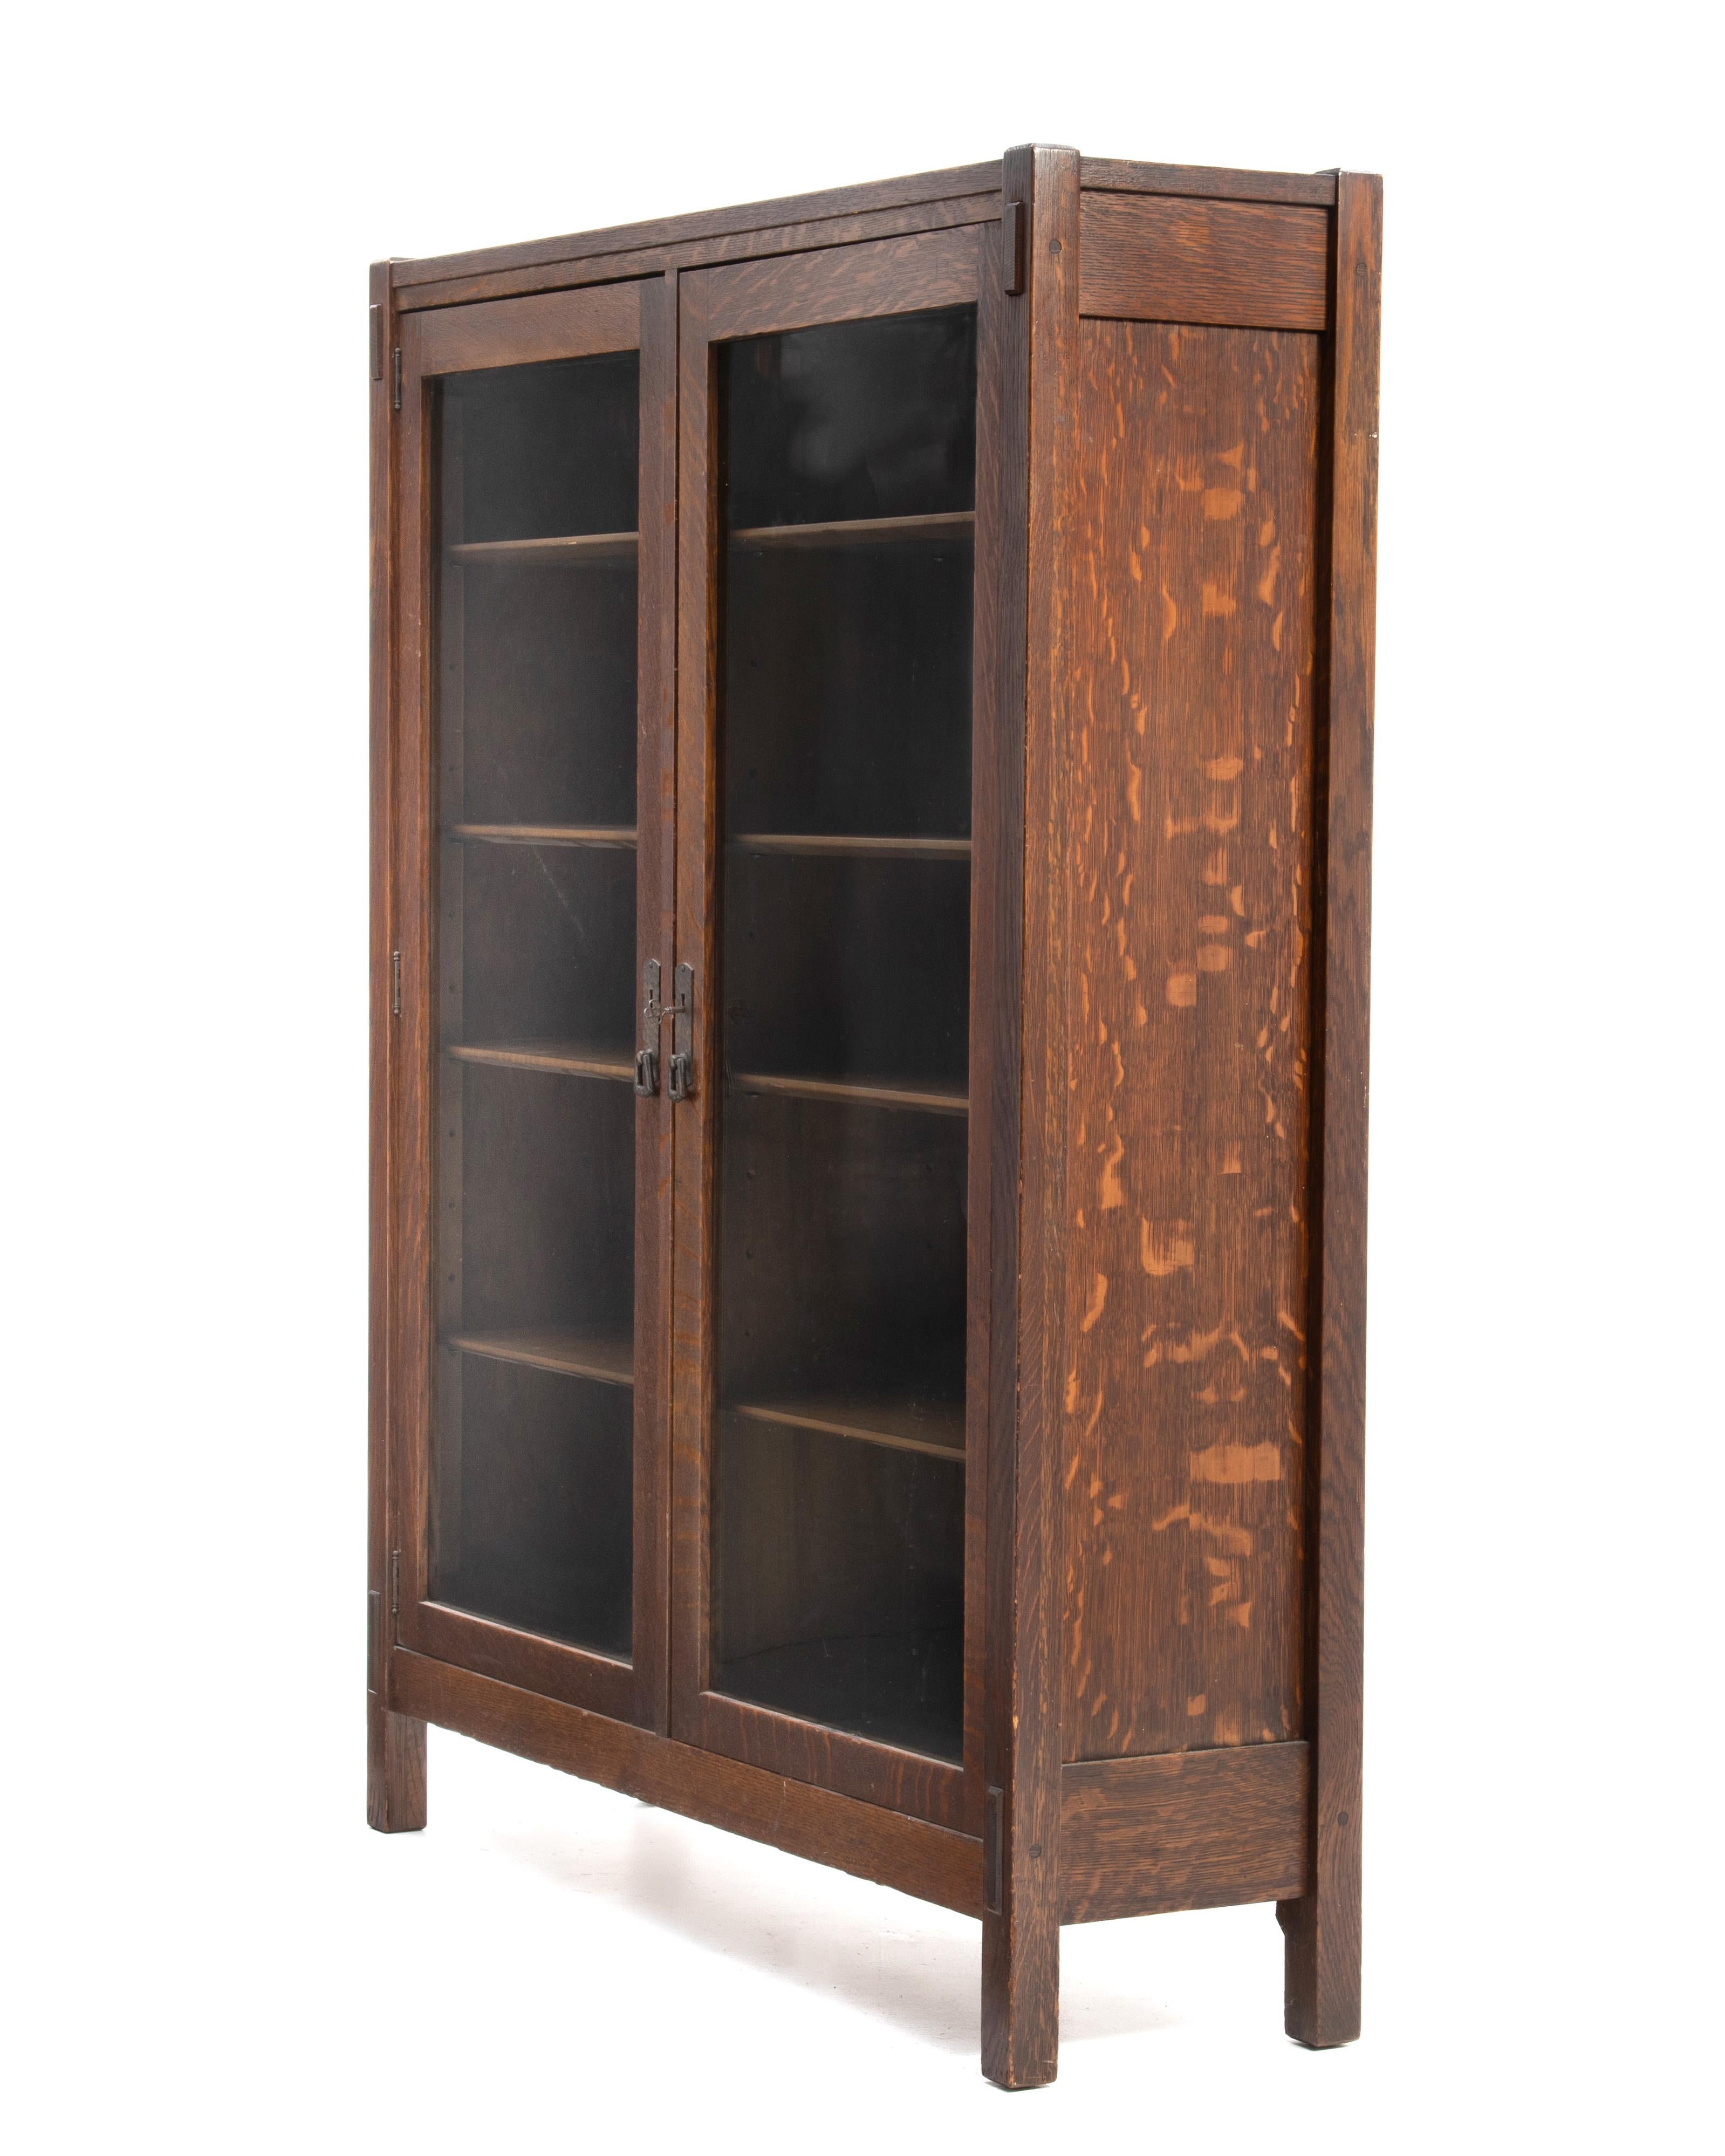 Américain Lifetime Arts & Crafts Mission Oak Bookcase Pegged Through Tenon Original Finish (Bibliothèque en chêne à tenons et mortaises) en vente